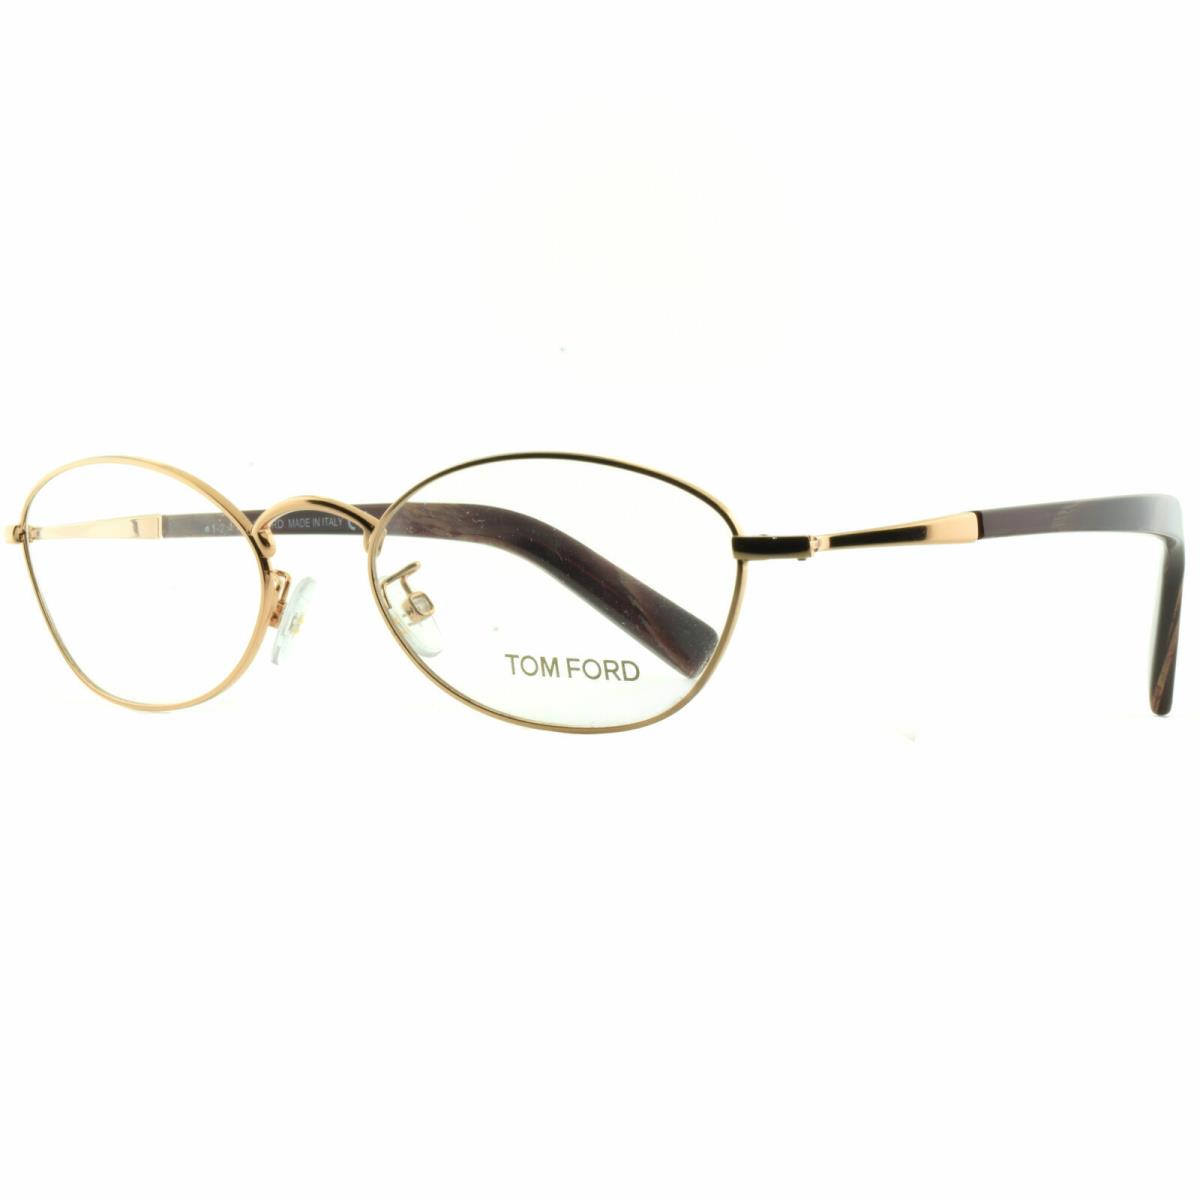 Tom Ford FT5368 030 Gold / Brown Oval Optical Frames Eyeglasses